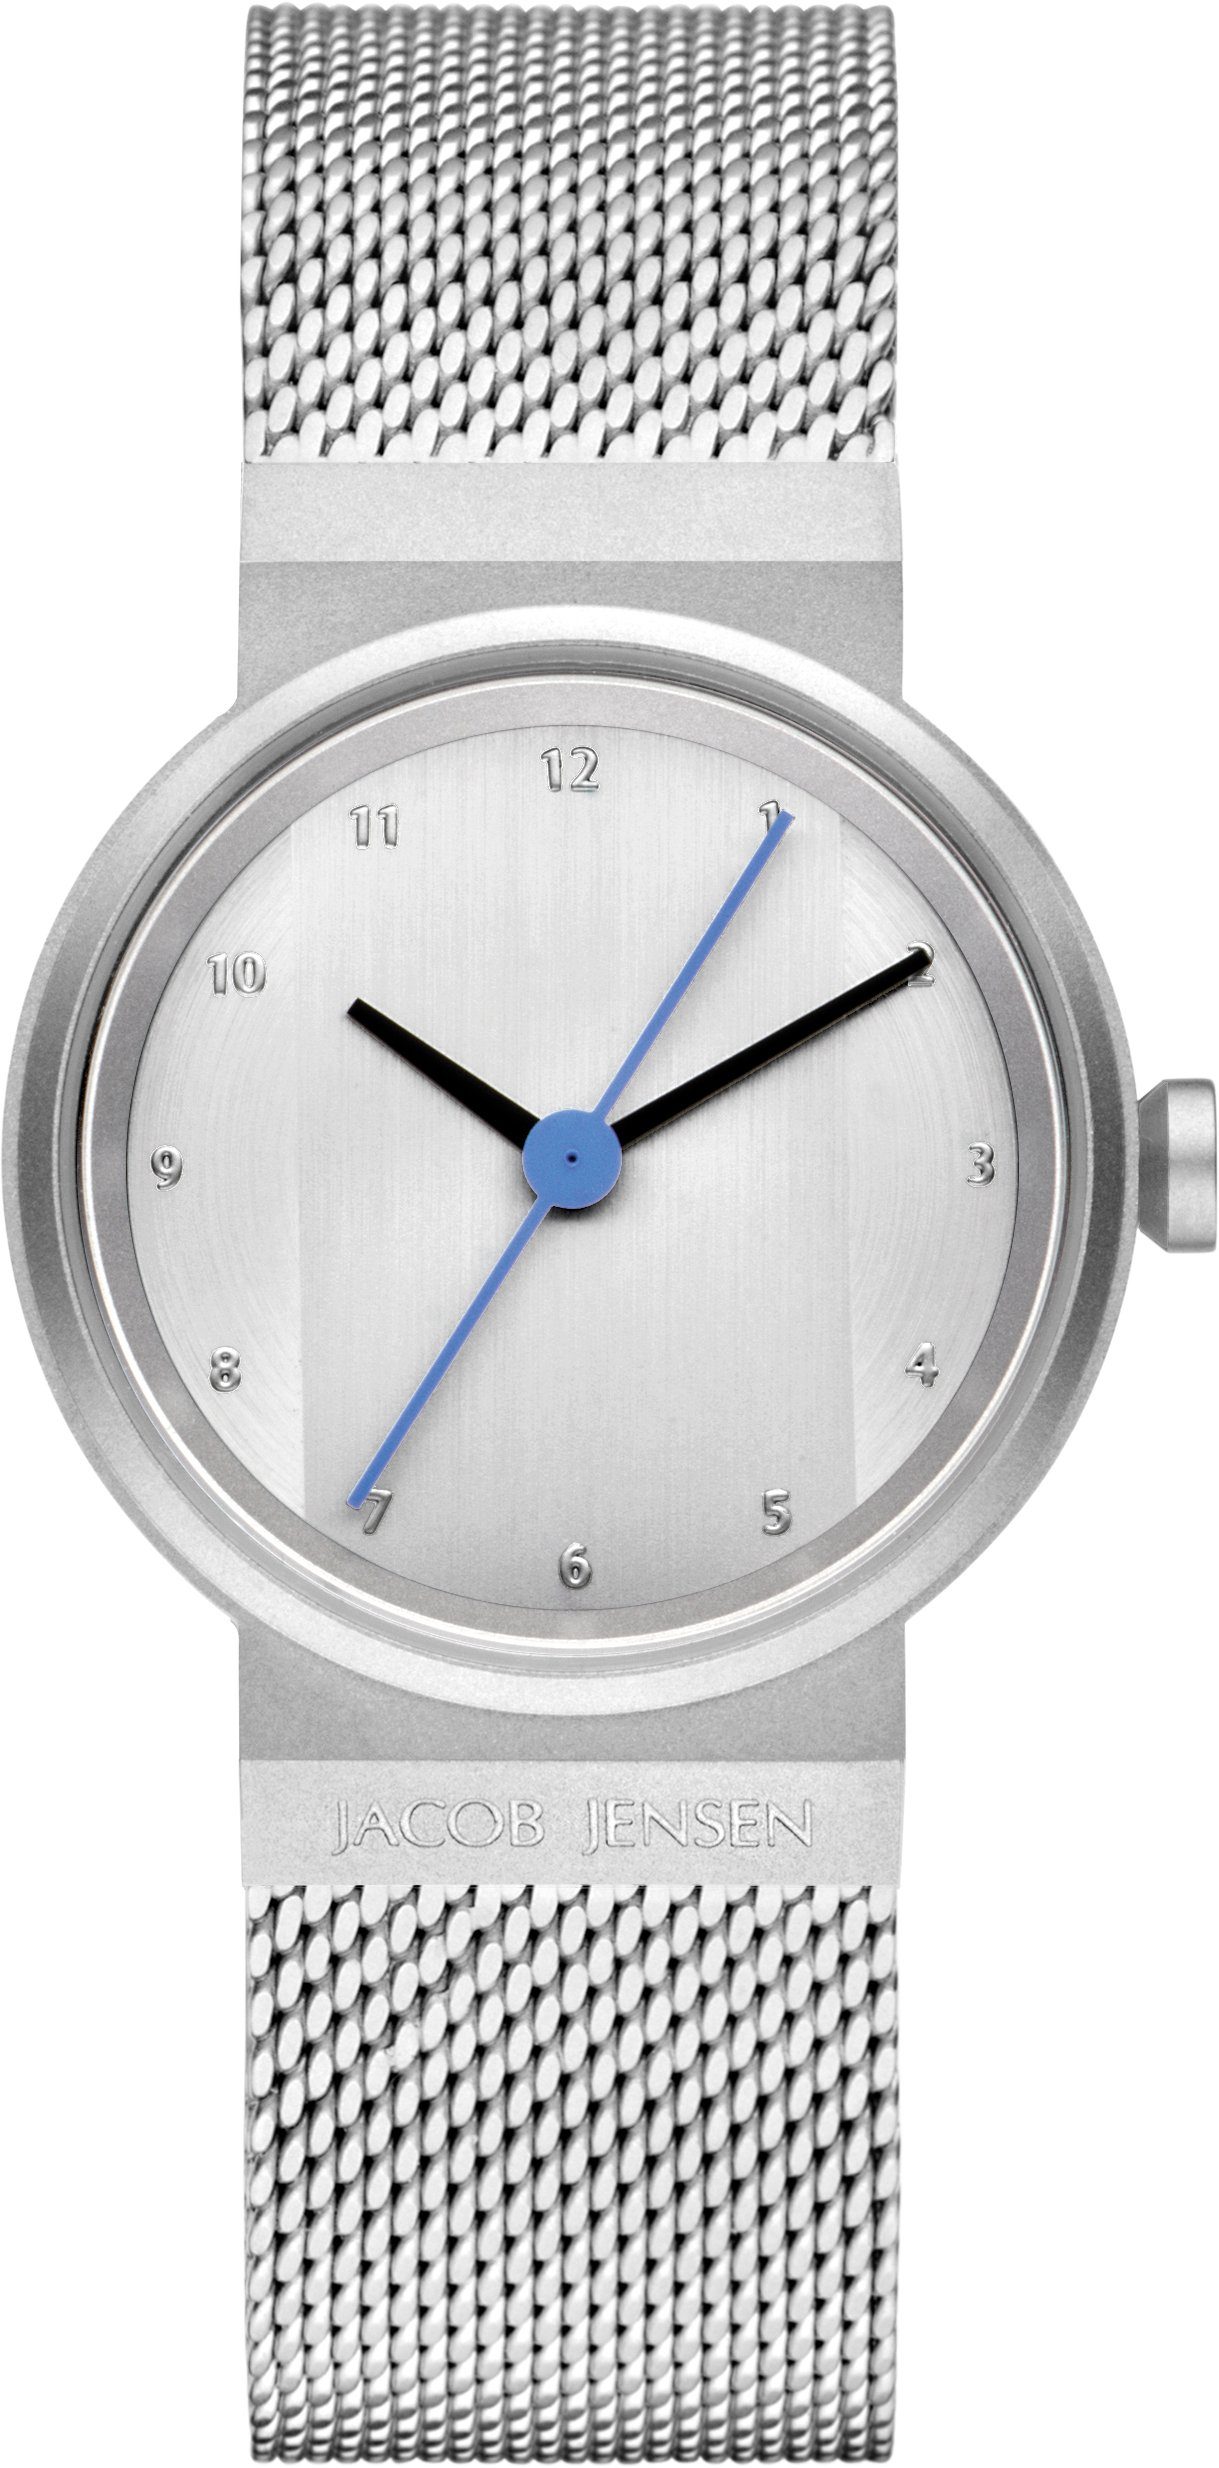 Jacob Jensen Quarzuhr Damenuhr Design Edelstahl Milanaise Uhrband NEW LINE ⌀29mm, extra langer Sekundenzeiger silber | Quarzuhren